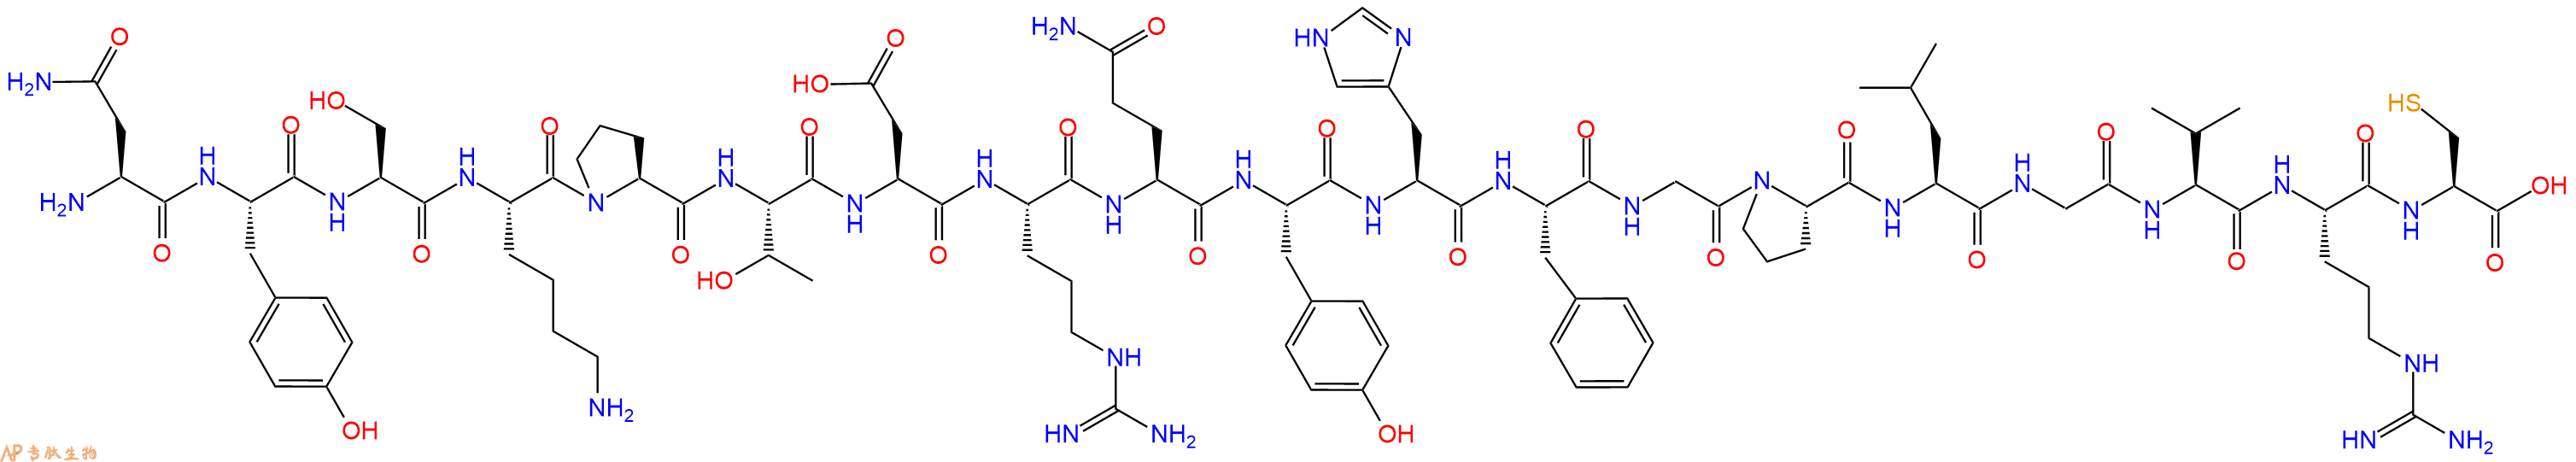 专肽生物产品H2N-Asn-Tyr-Ser-Lys-Pro-Thr-Asp-Arg-Gln-Tyr-His-Ph